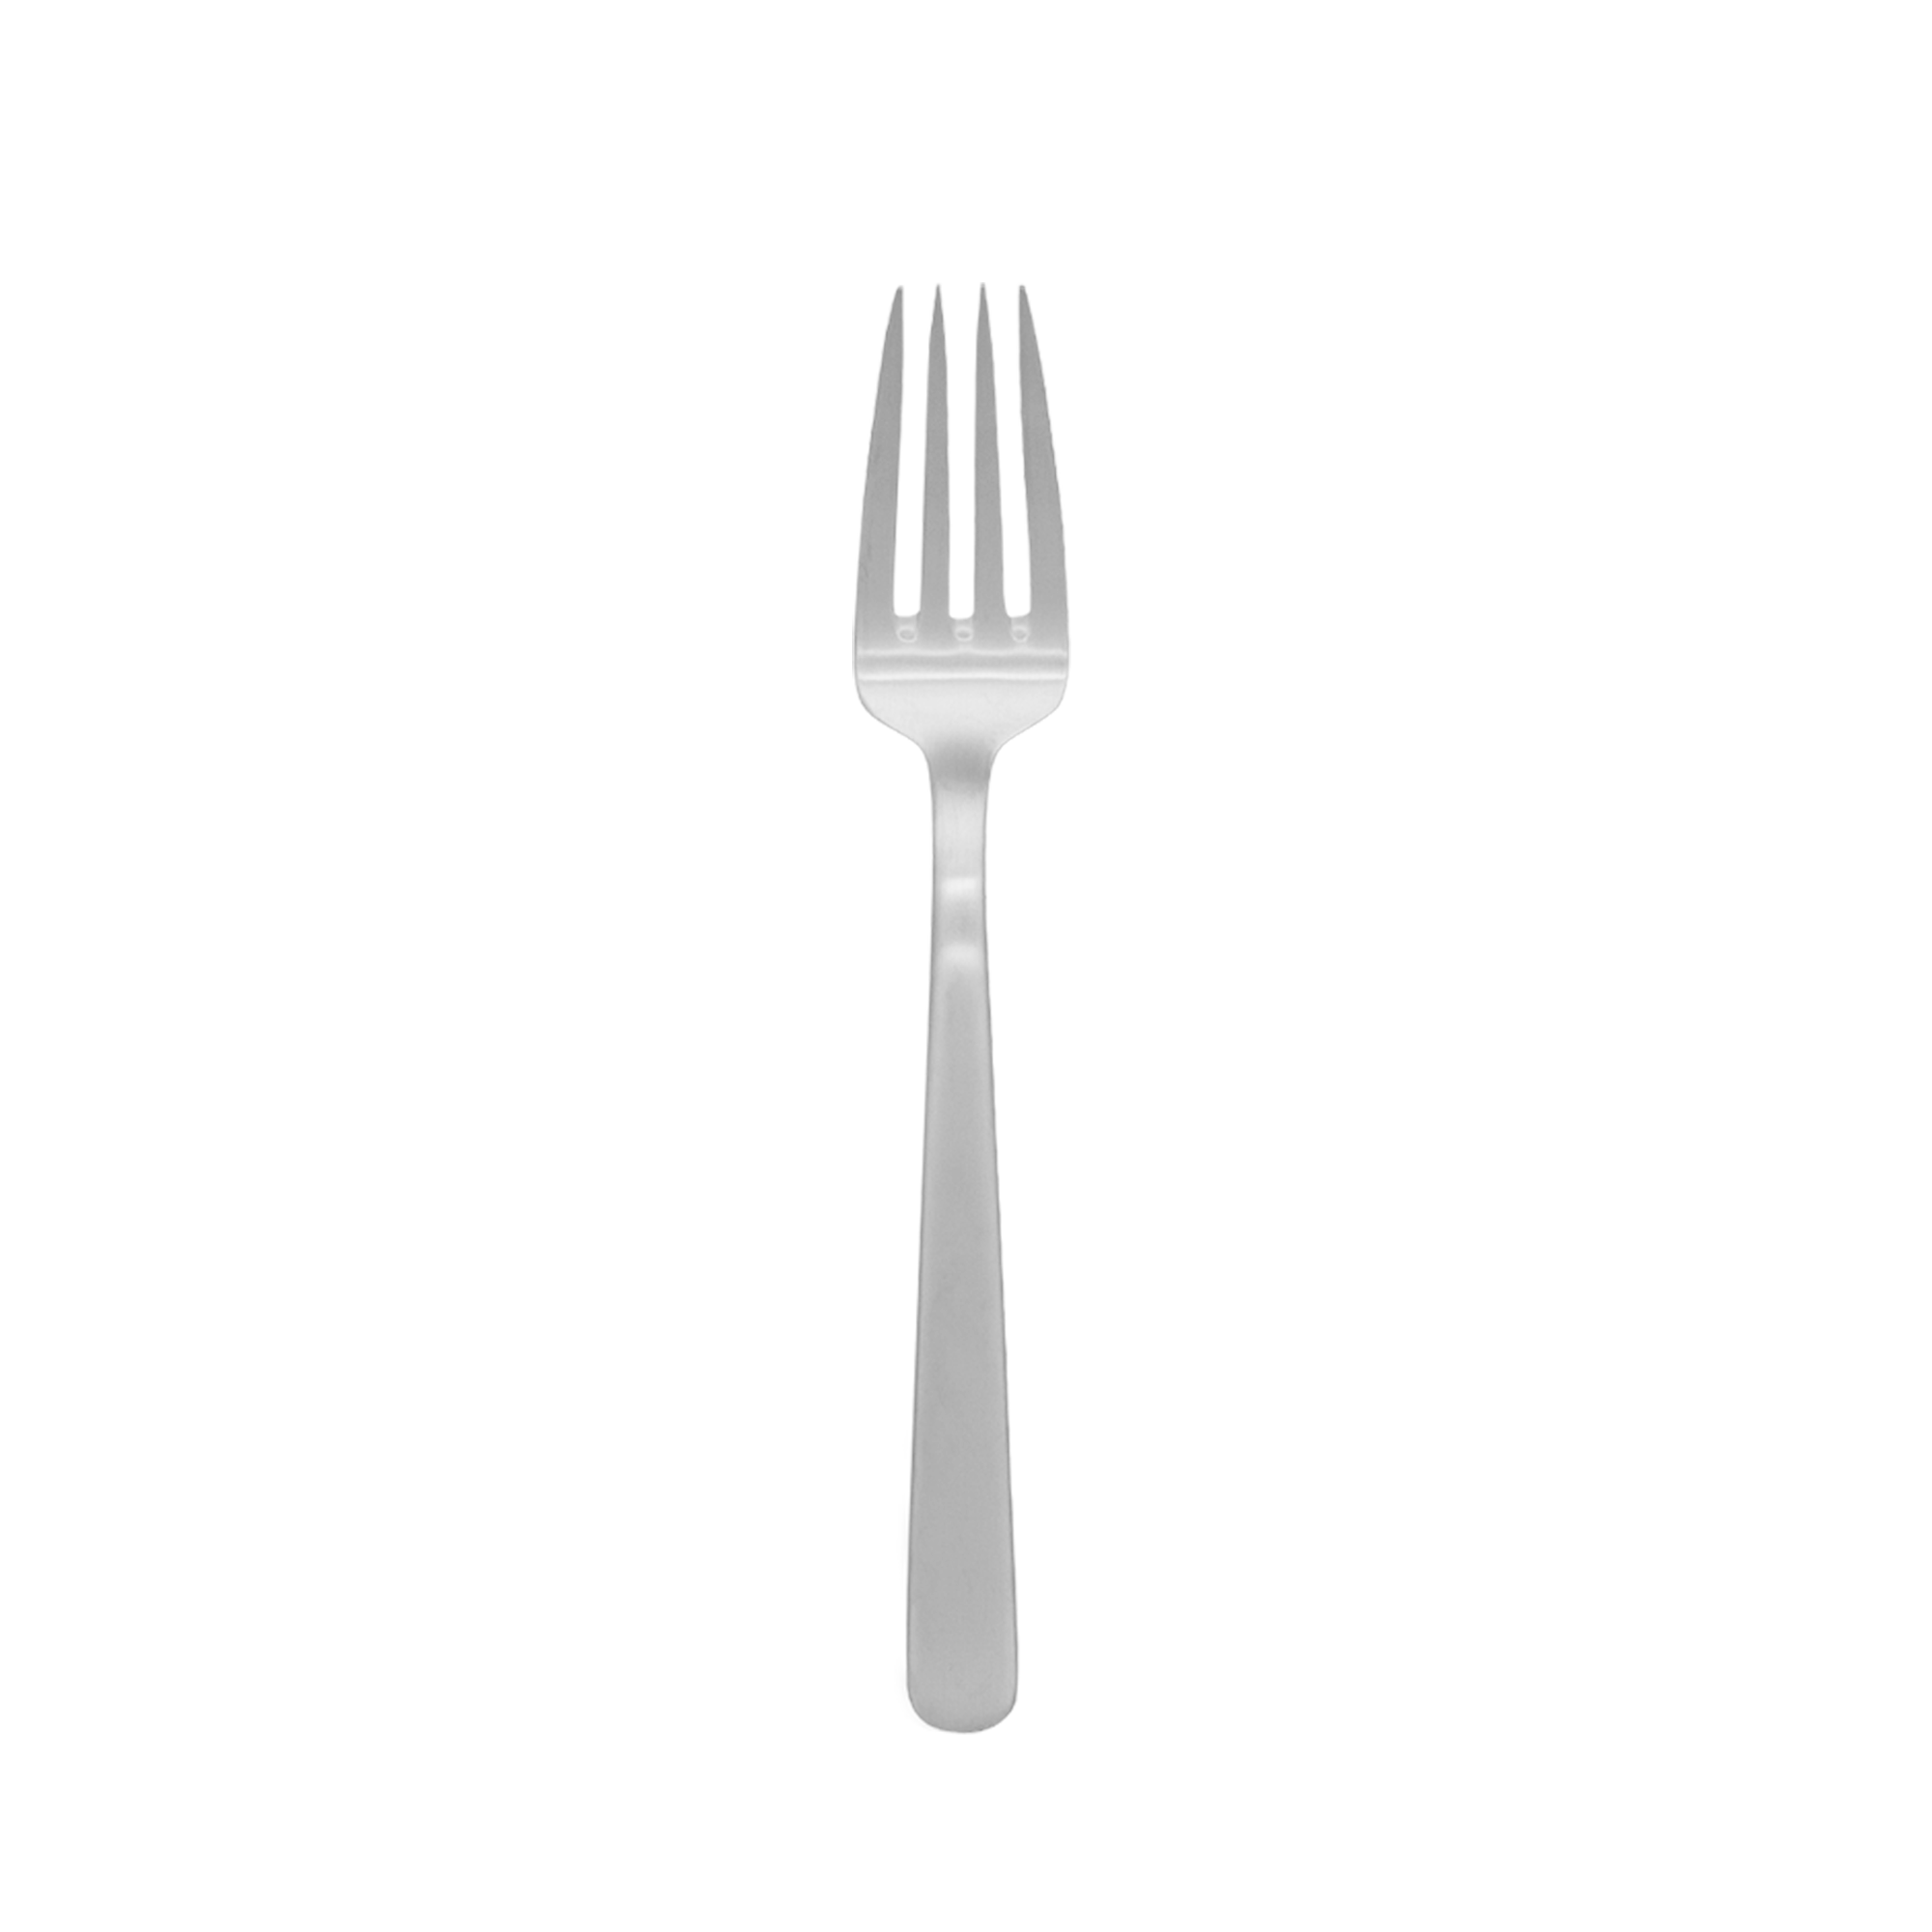 Dinner fork